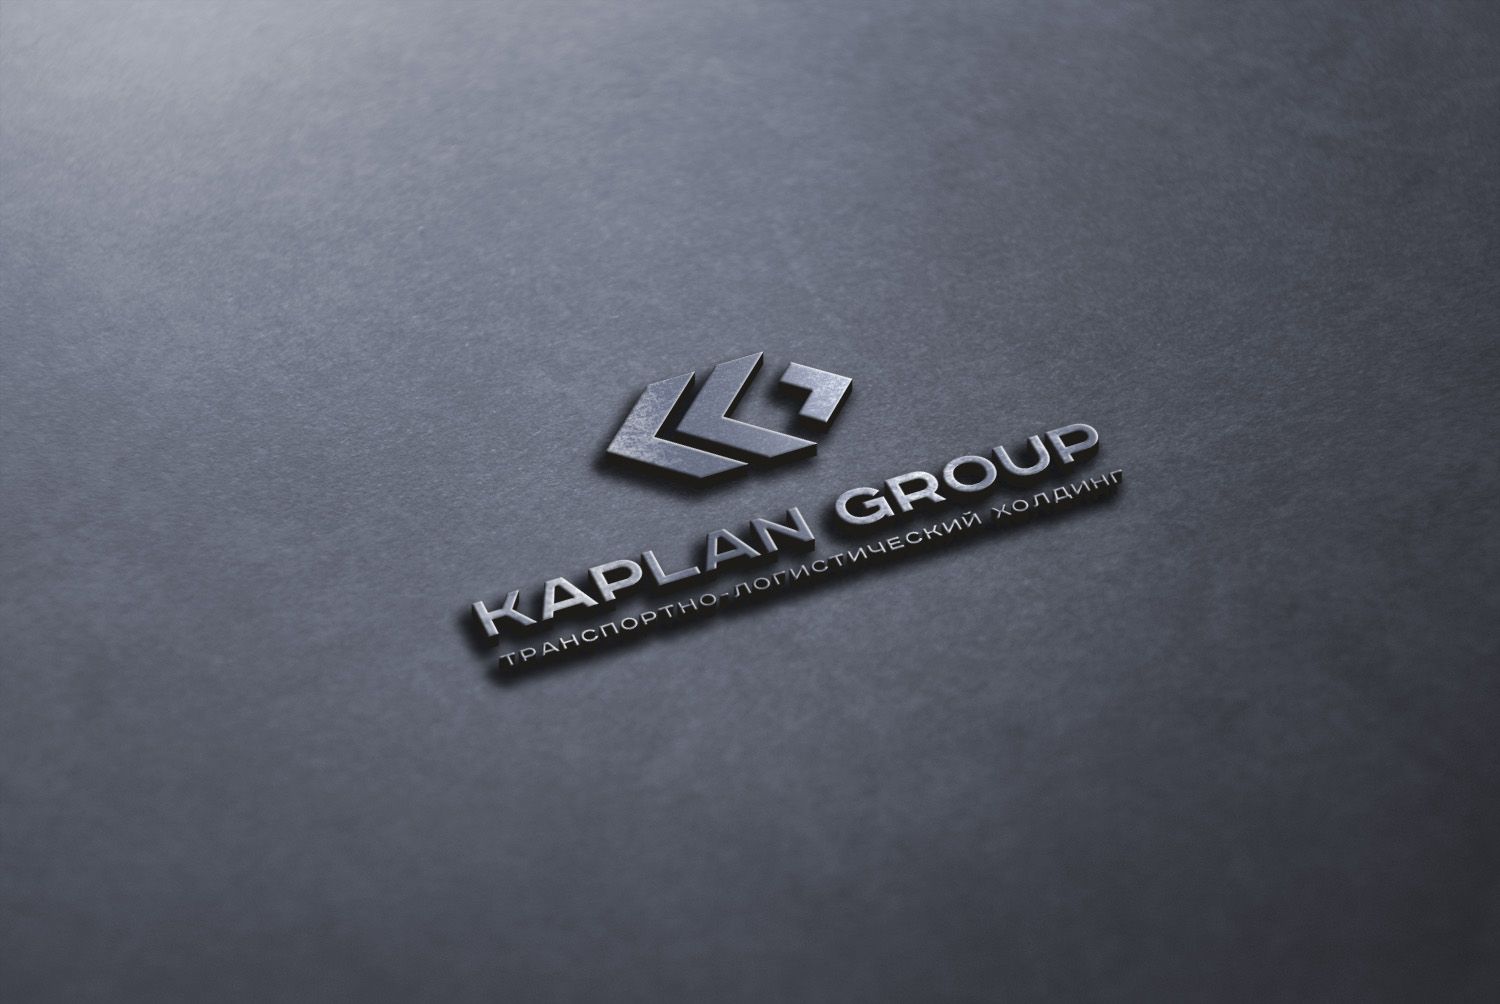 Логотип для KAPLAN group (КАПЛАН Групп) - дизайнер U4po4mak